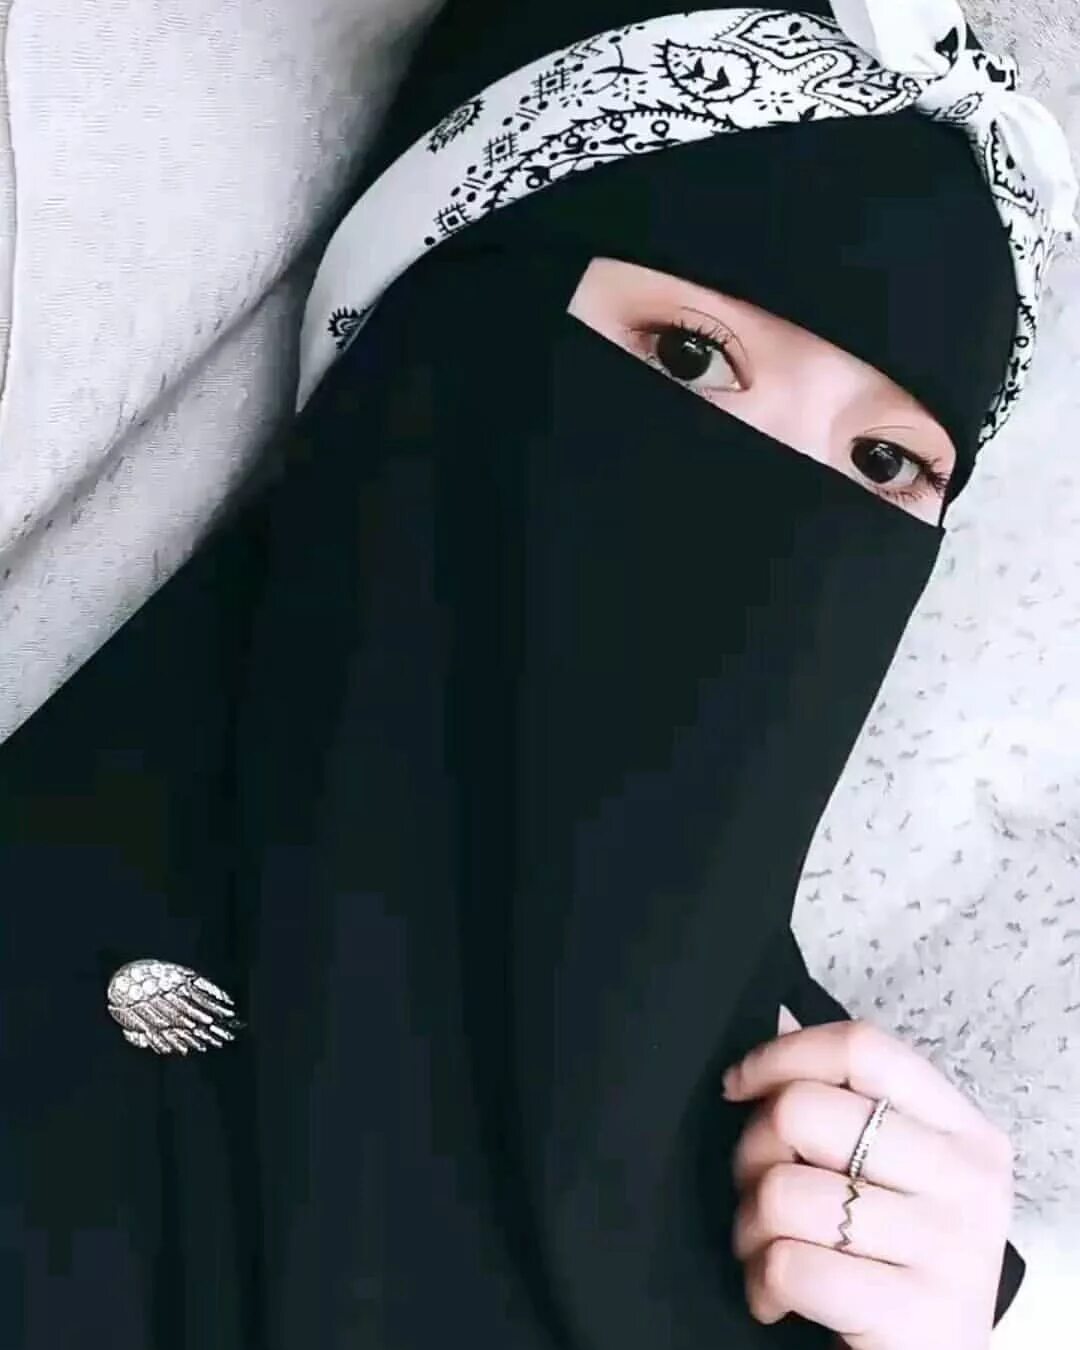 Мусульманская 15. Ухти никаб. Селима никаб. Королевский никяб. Хиджаб и никаб.